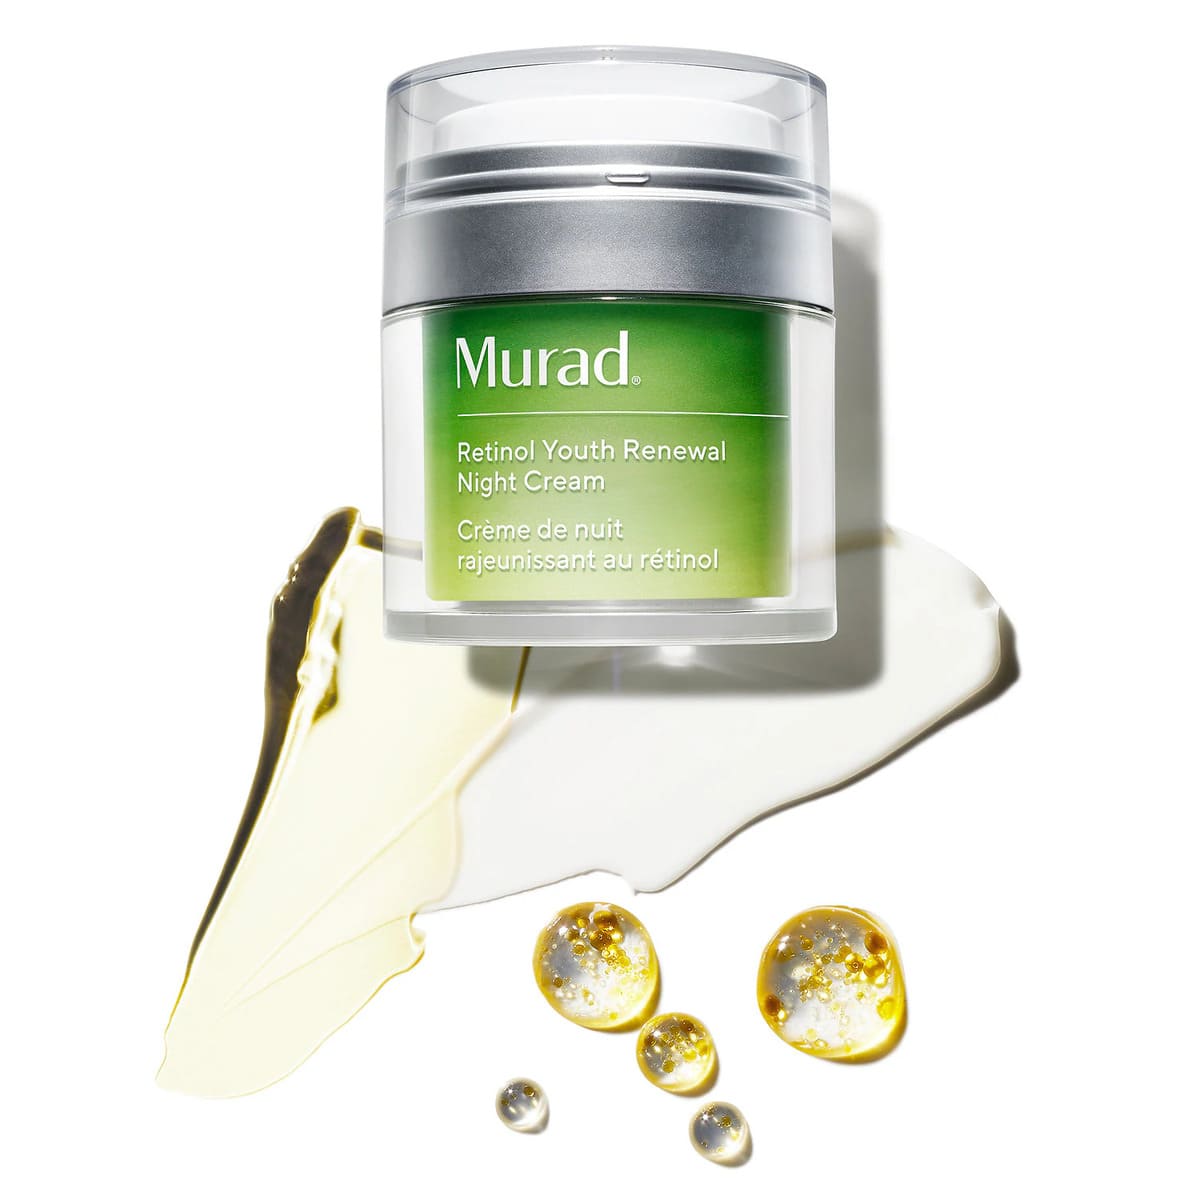 Murad Retinol Youth Renewal Night Cream from Sephora